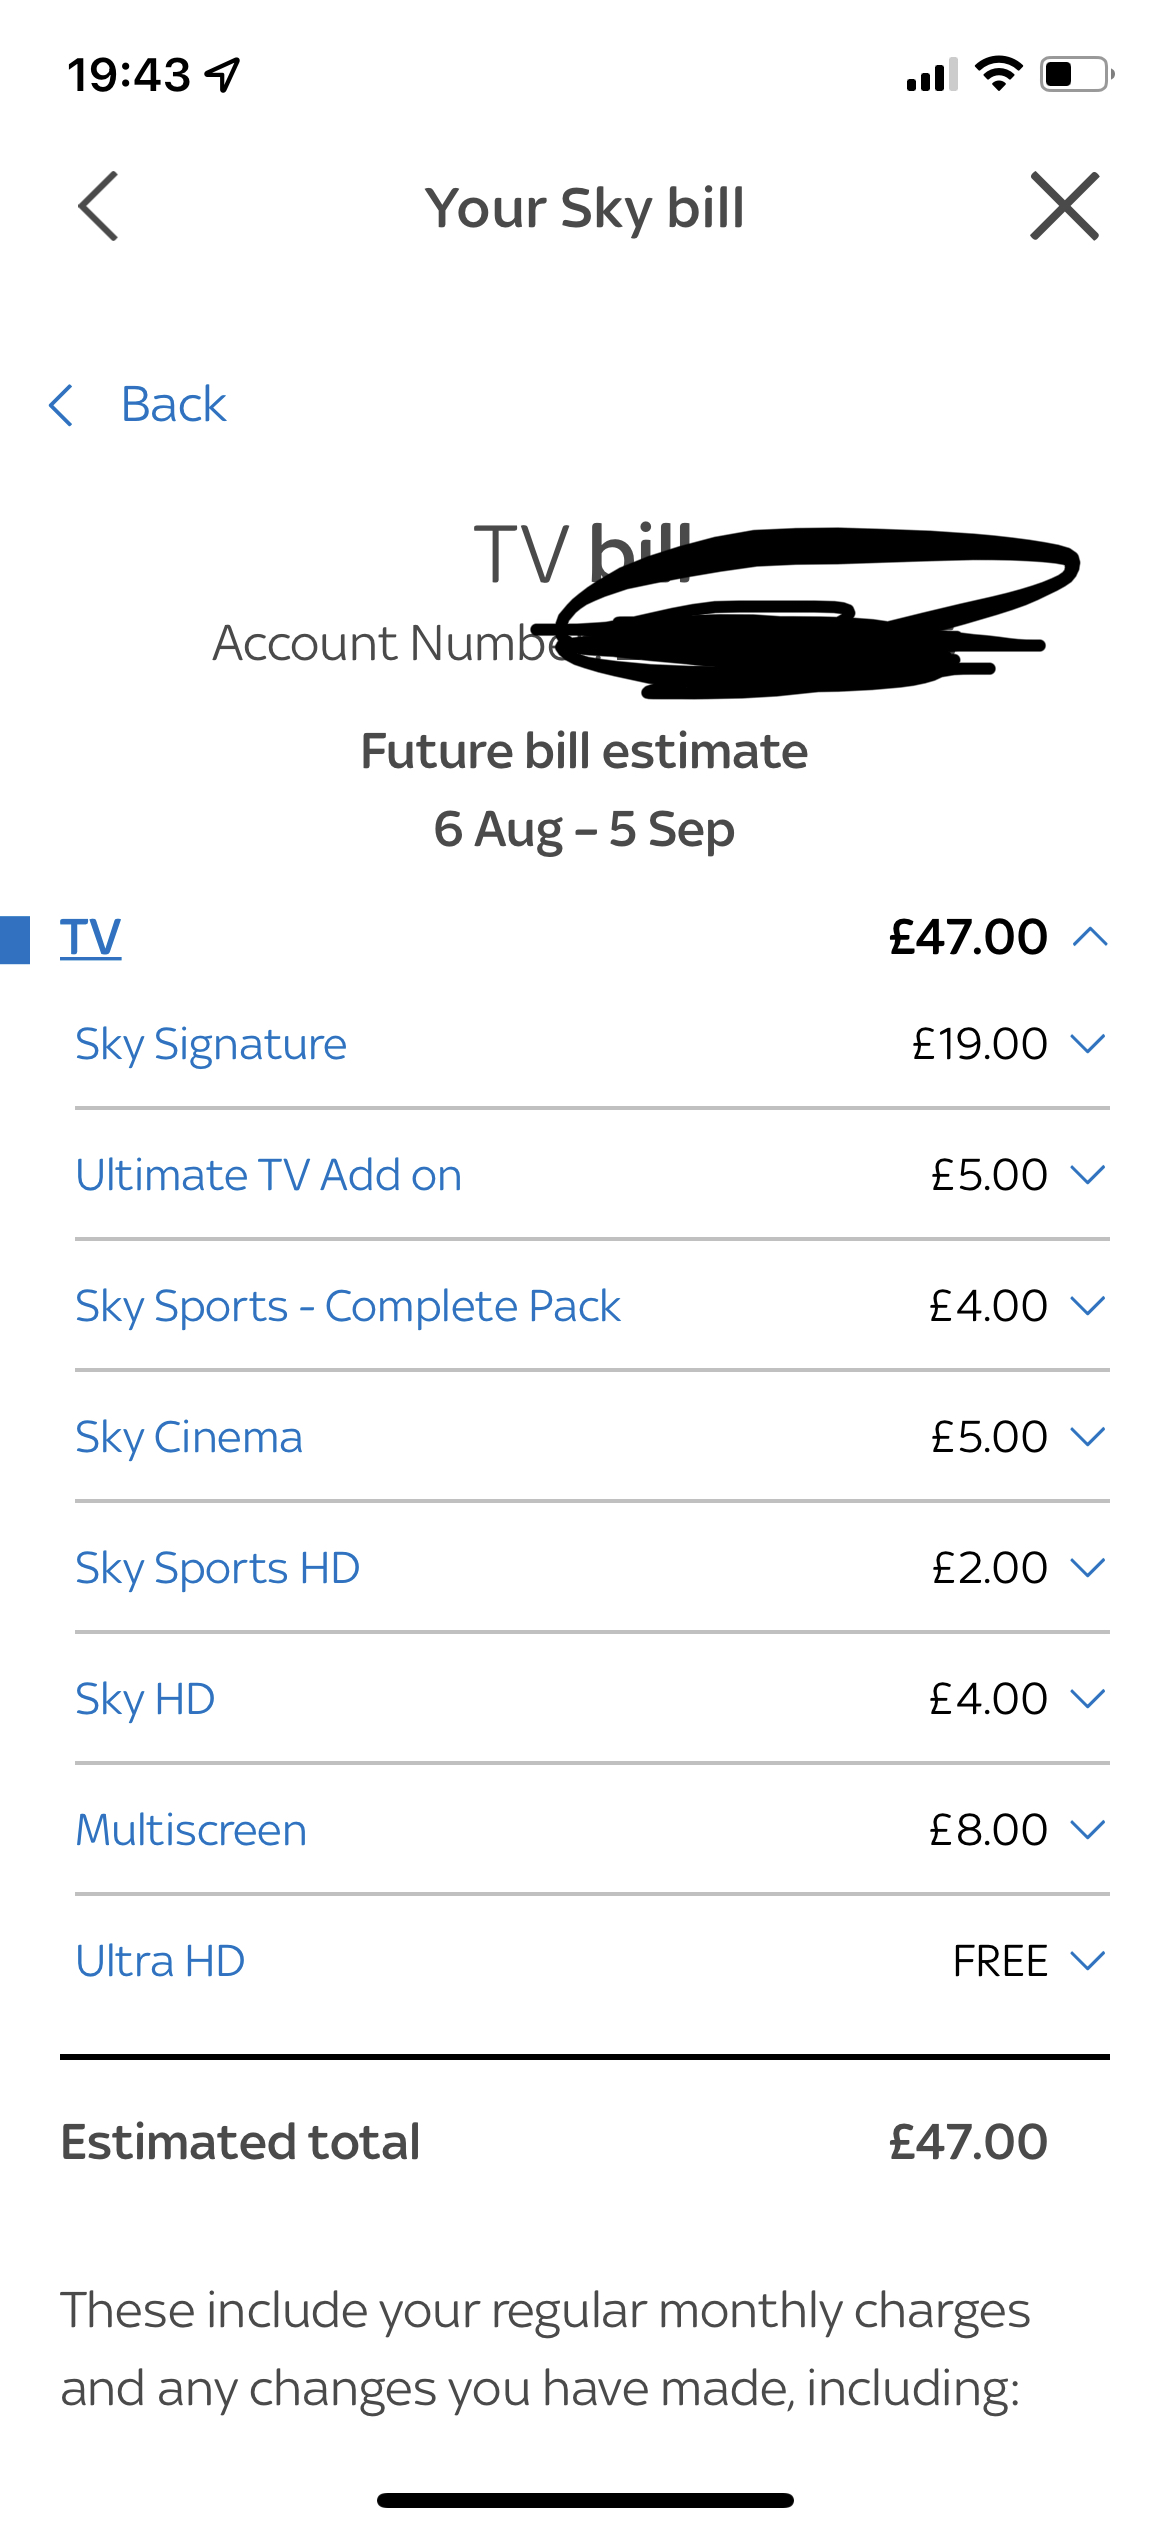 Sky deals anyone?  - Page 66 - Home Cinema & Hi-Fi - PistonHeads UK